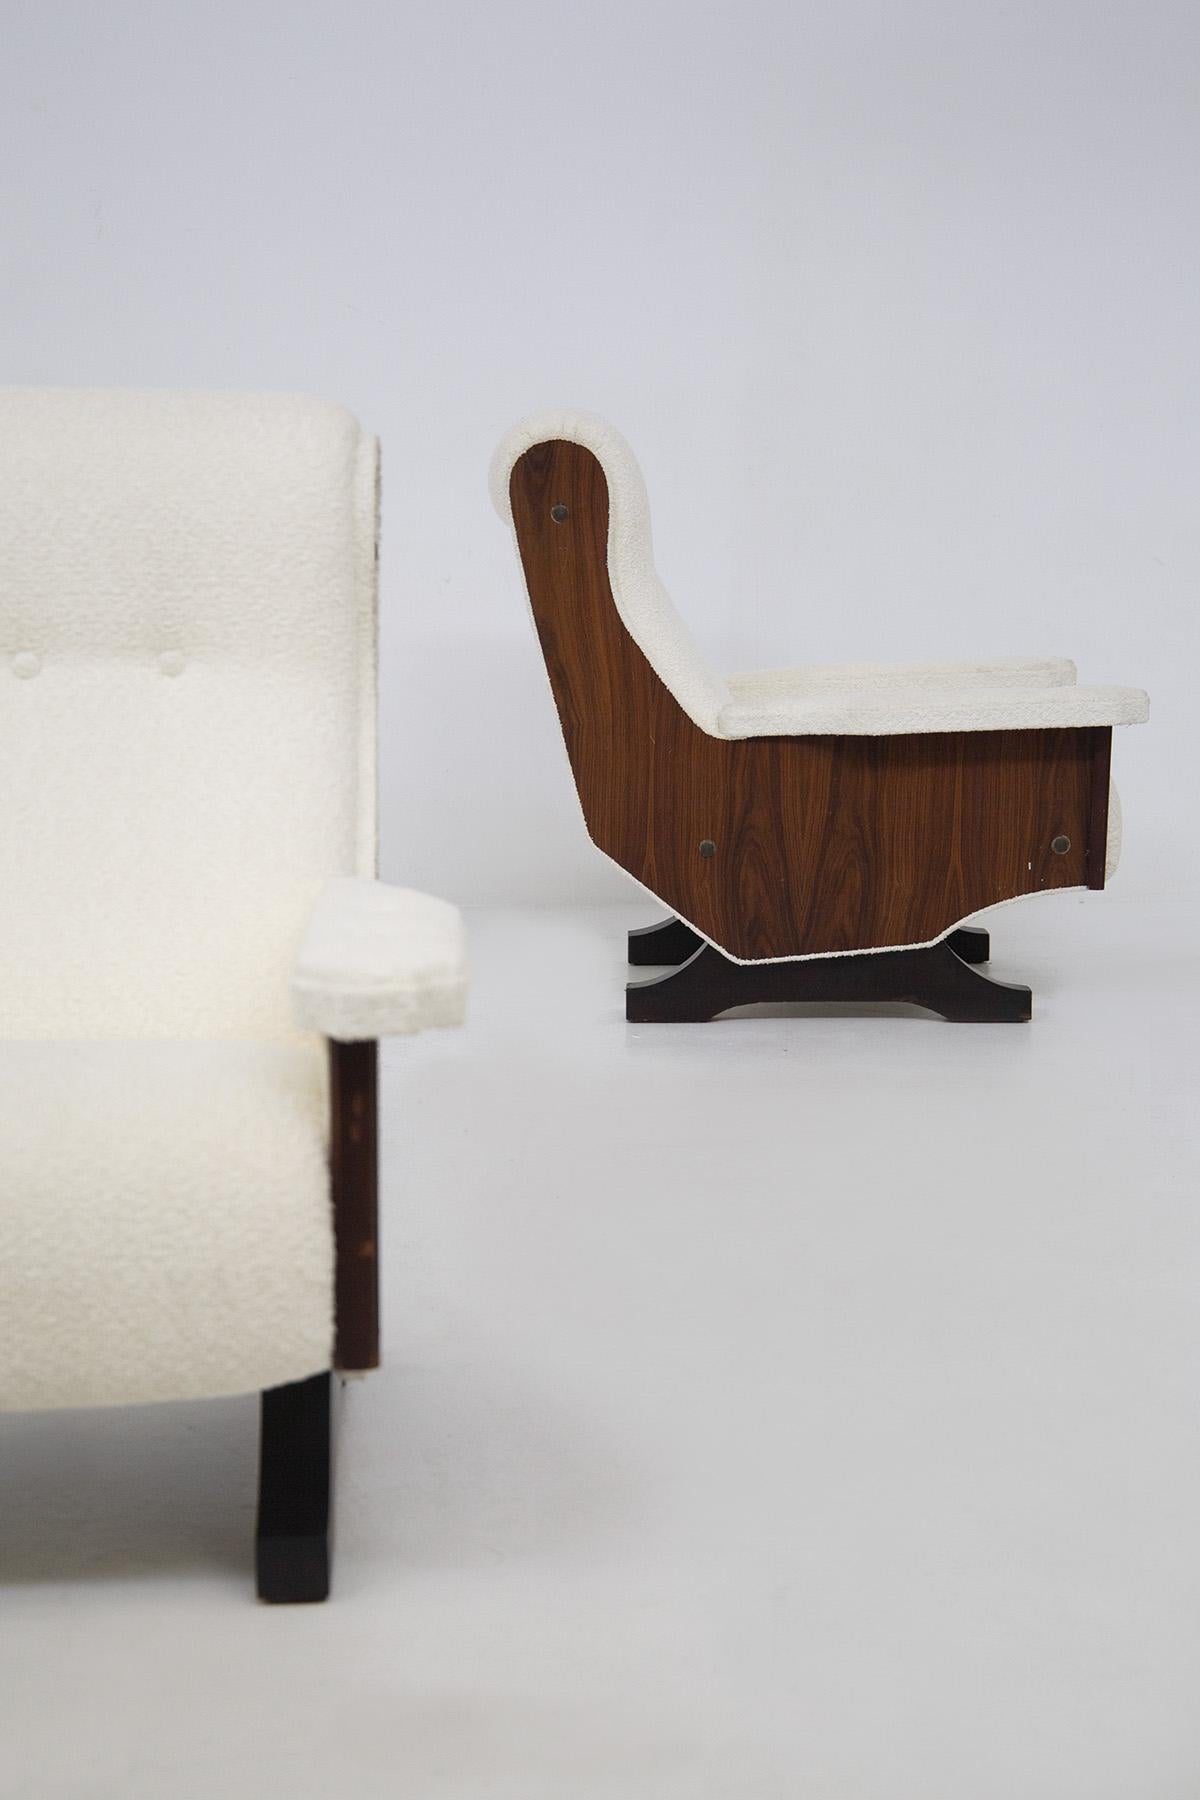 Cette paire de fauteuils vintage a été fabriquée dans les années 60. Elles sont en bois de noyer et fabriquées par des fabricants italiens de qualité. Les chaises élégantes ont été retapissées en boucle blanche. La forme particulière consiste en un